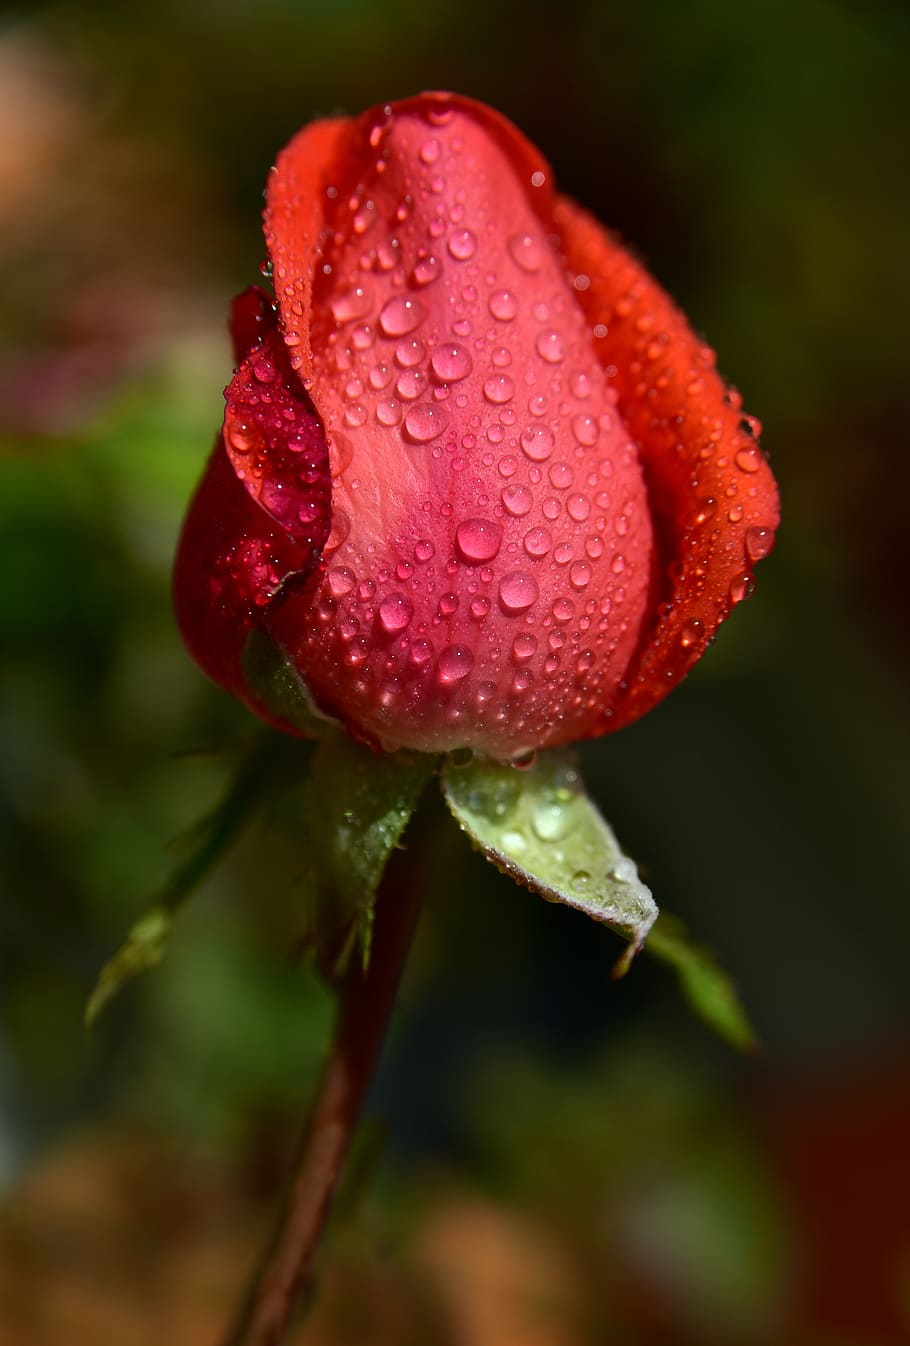 mawar, kuncup, kuncup mawar, warna merah muda, merah, bunga, lembut, tertutup, embun, hujan